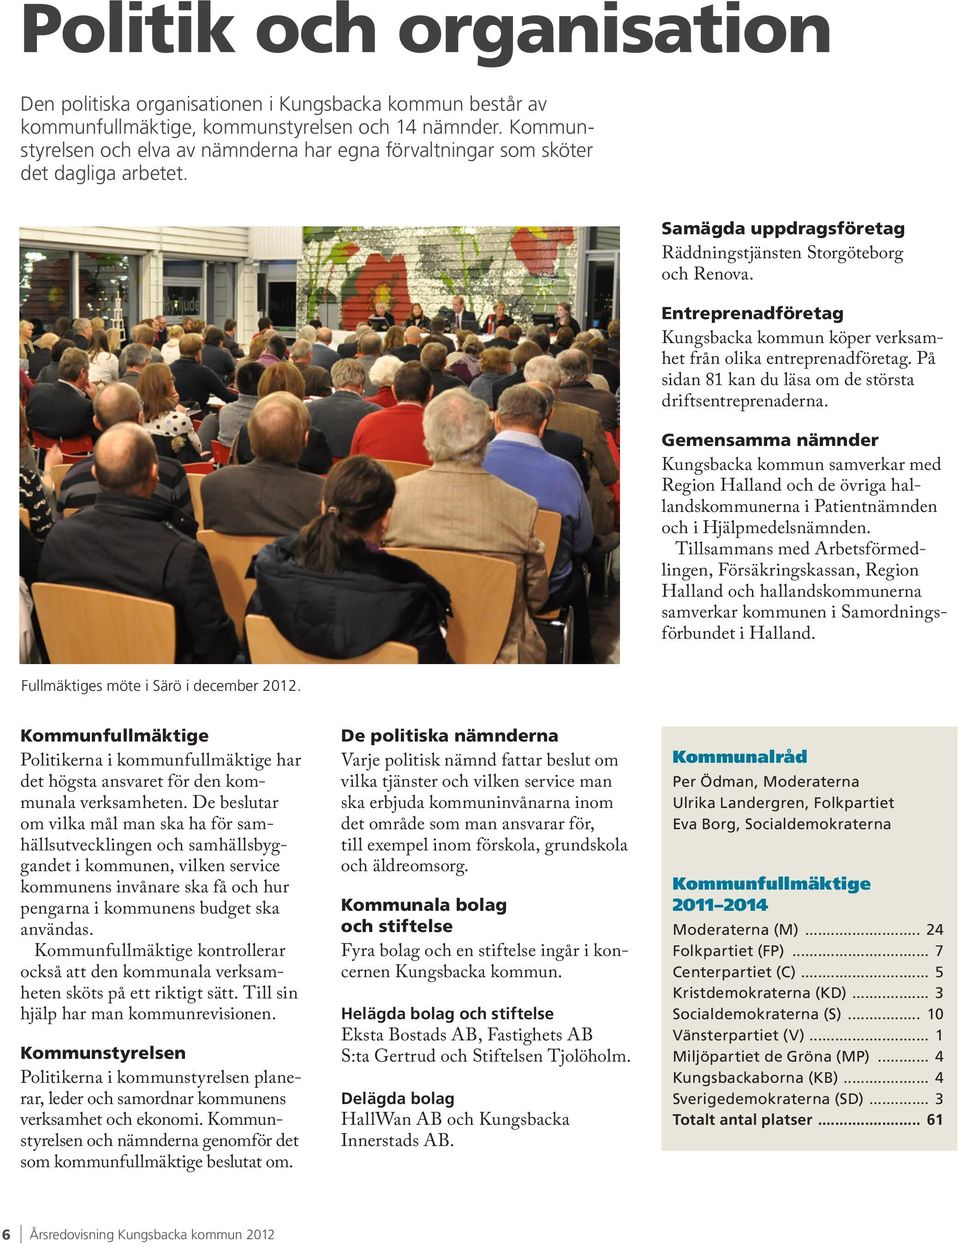 Entreprenadföretag Kungsbacka kommun köper verksamhet från olika entreprenadföretag. På sidan 81 kan du läsa om de största driftsentreprenaderna.